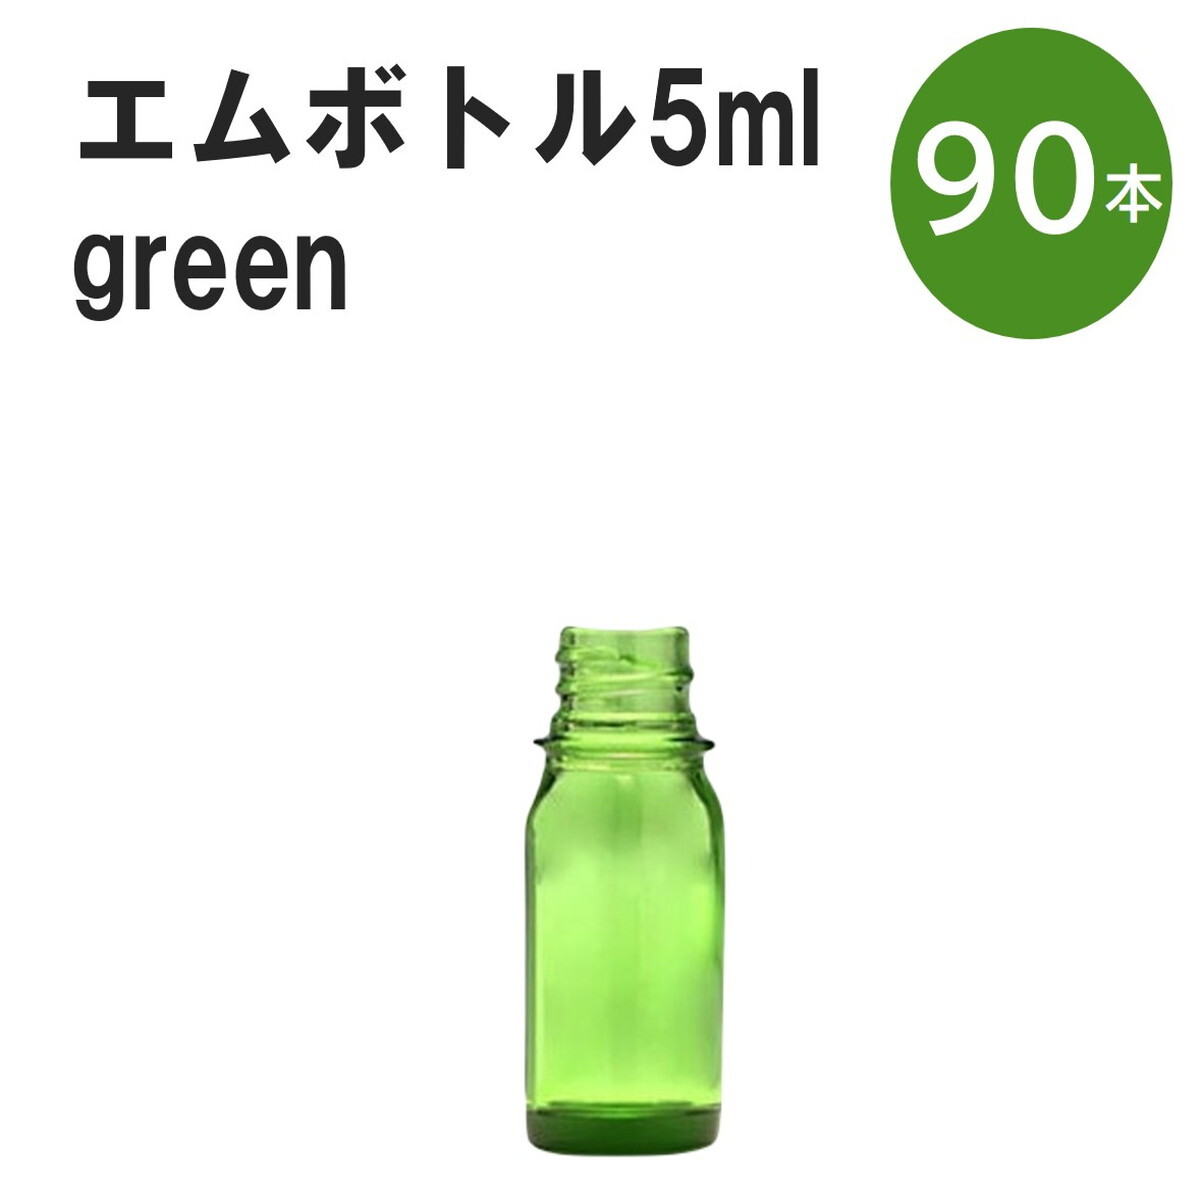 「グリーン エムボトルNo.5G 5ml キャップ シャインキャップ 90本 」 遮光ガラス瓶 小分け 詰め替え用 遮光瓶 詰め替え容器 空容器 保存用アロマ 手作りコスメ 精油 詰め替え 保存容器 ガラス瓶 肩が丸いシンプルなガラス瓶です。手作りコスメやアロマオイルなどの詰め替えに。 きれいな色は誰からも愛される定番色です。エッセンシャルオイルを入れるのに適した、遮光性のあるボトルです。 2